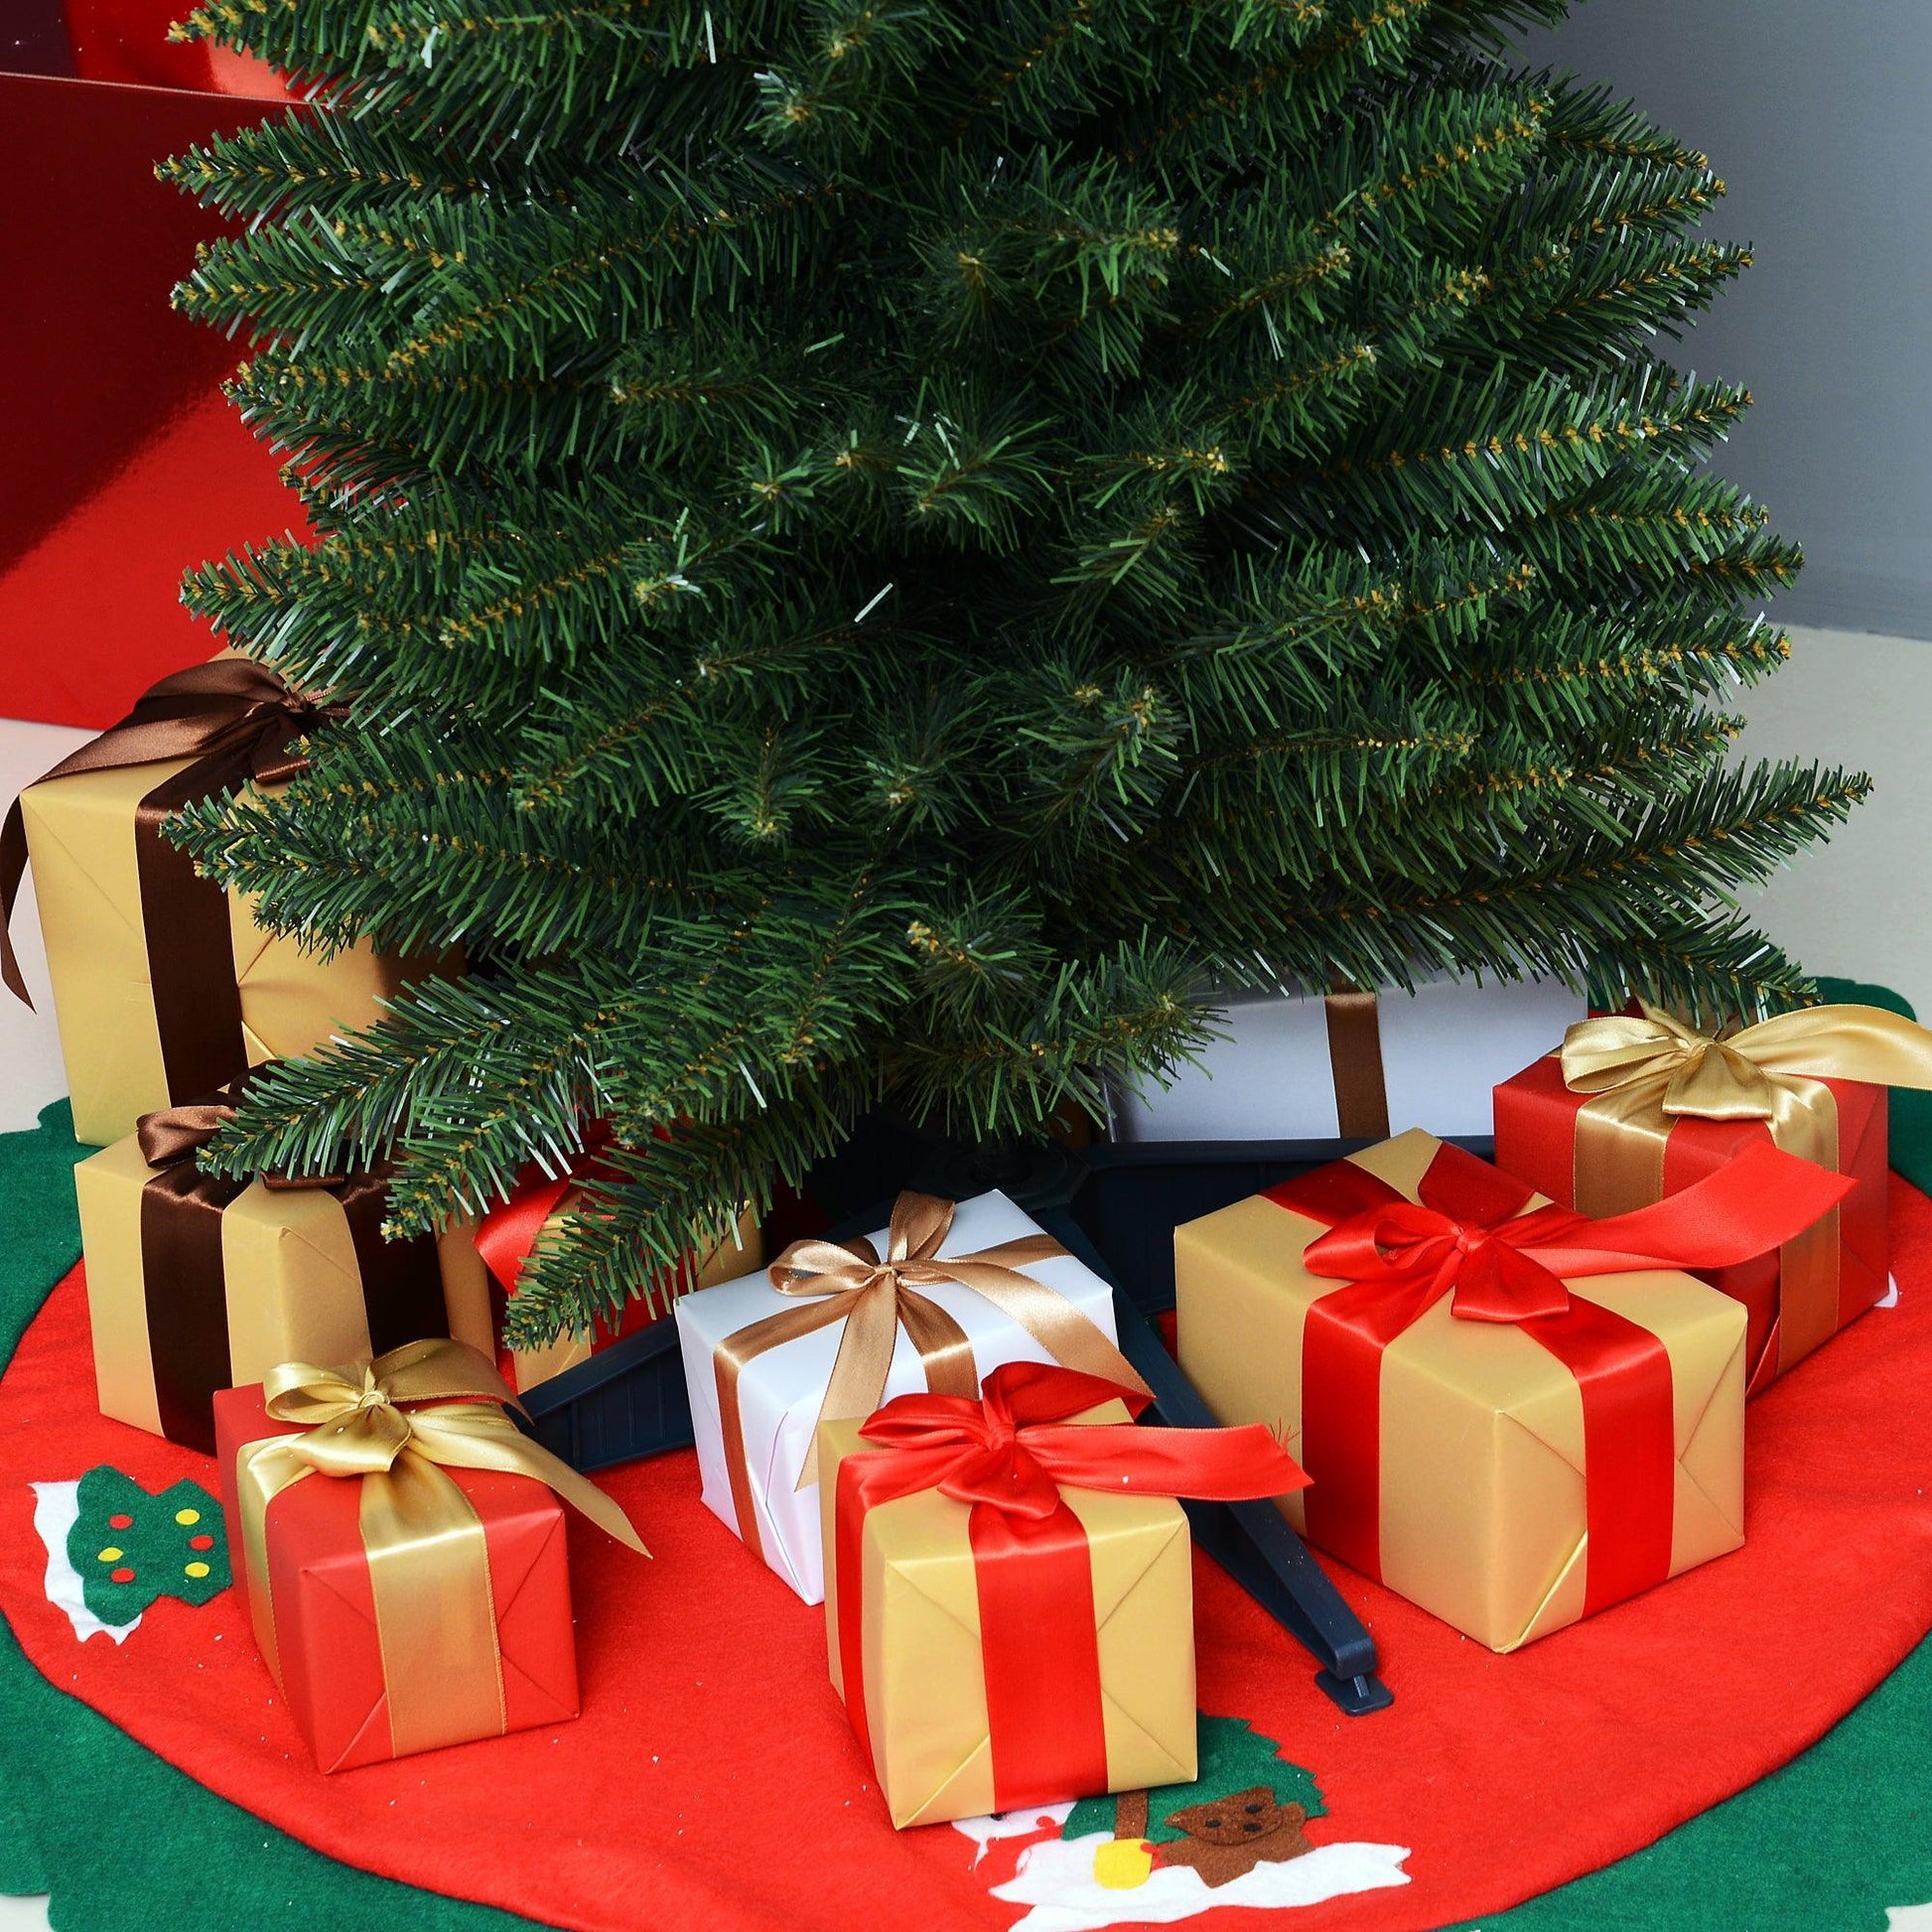 HOMCOM Artificial Christmas Pine Tree - 1.8m, Green - ALL4U RETAILER LTD